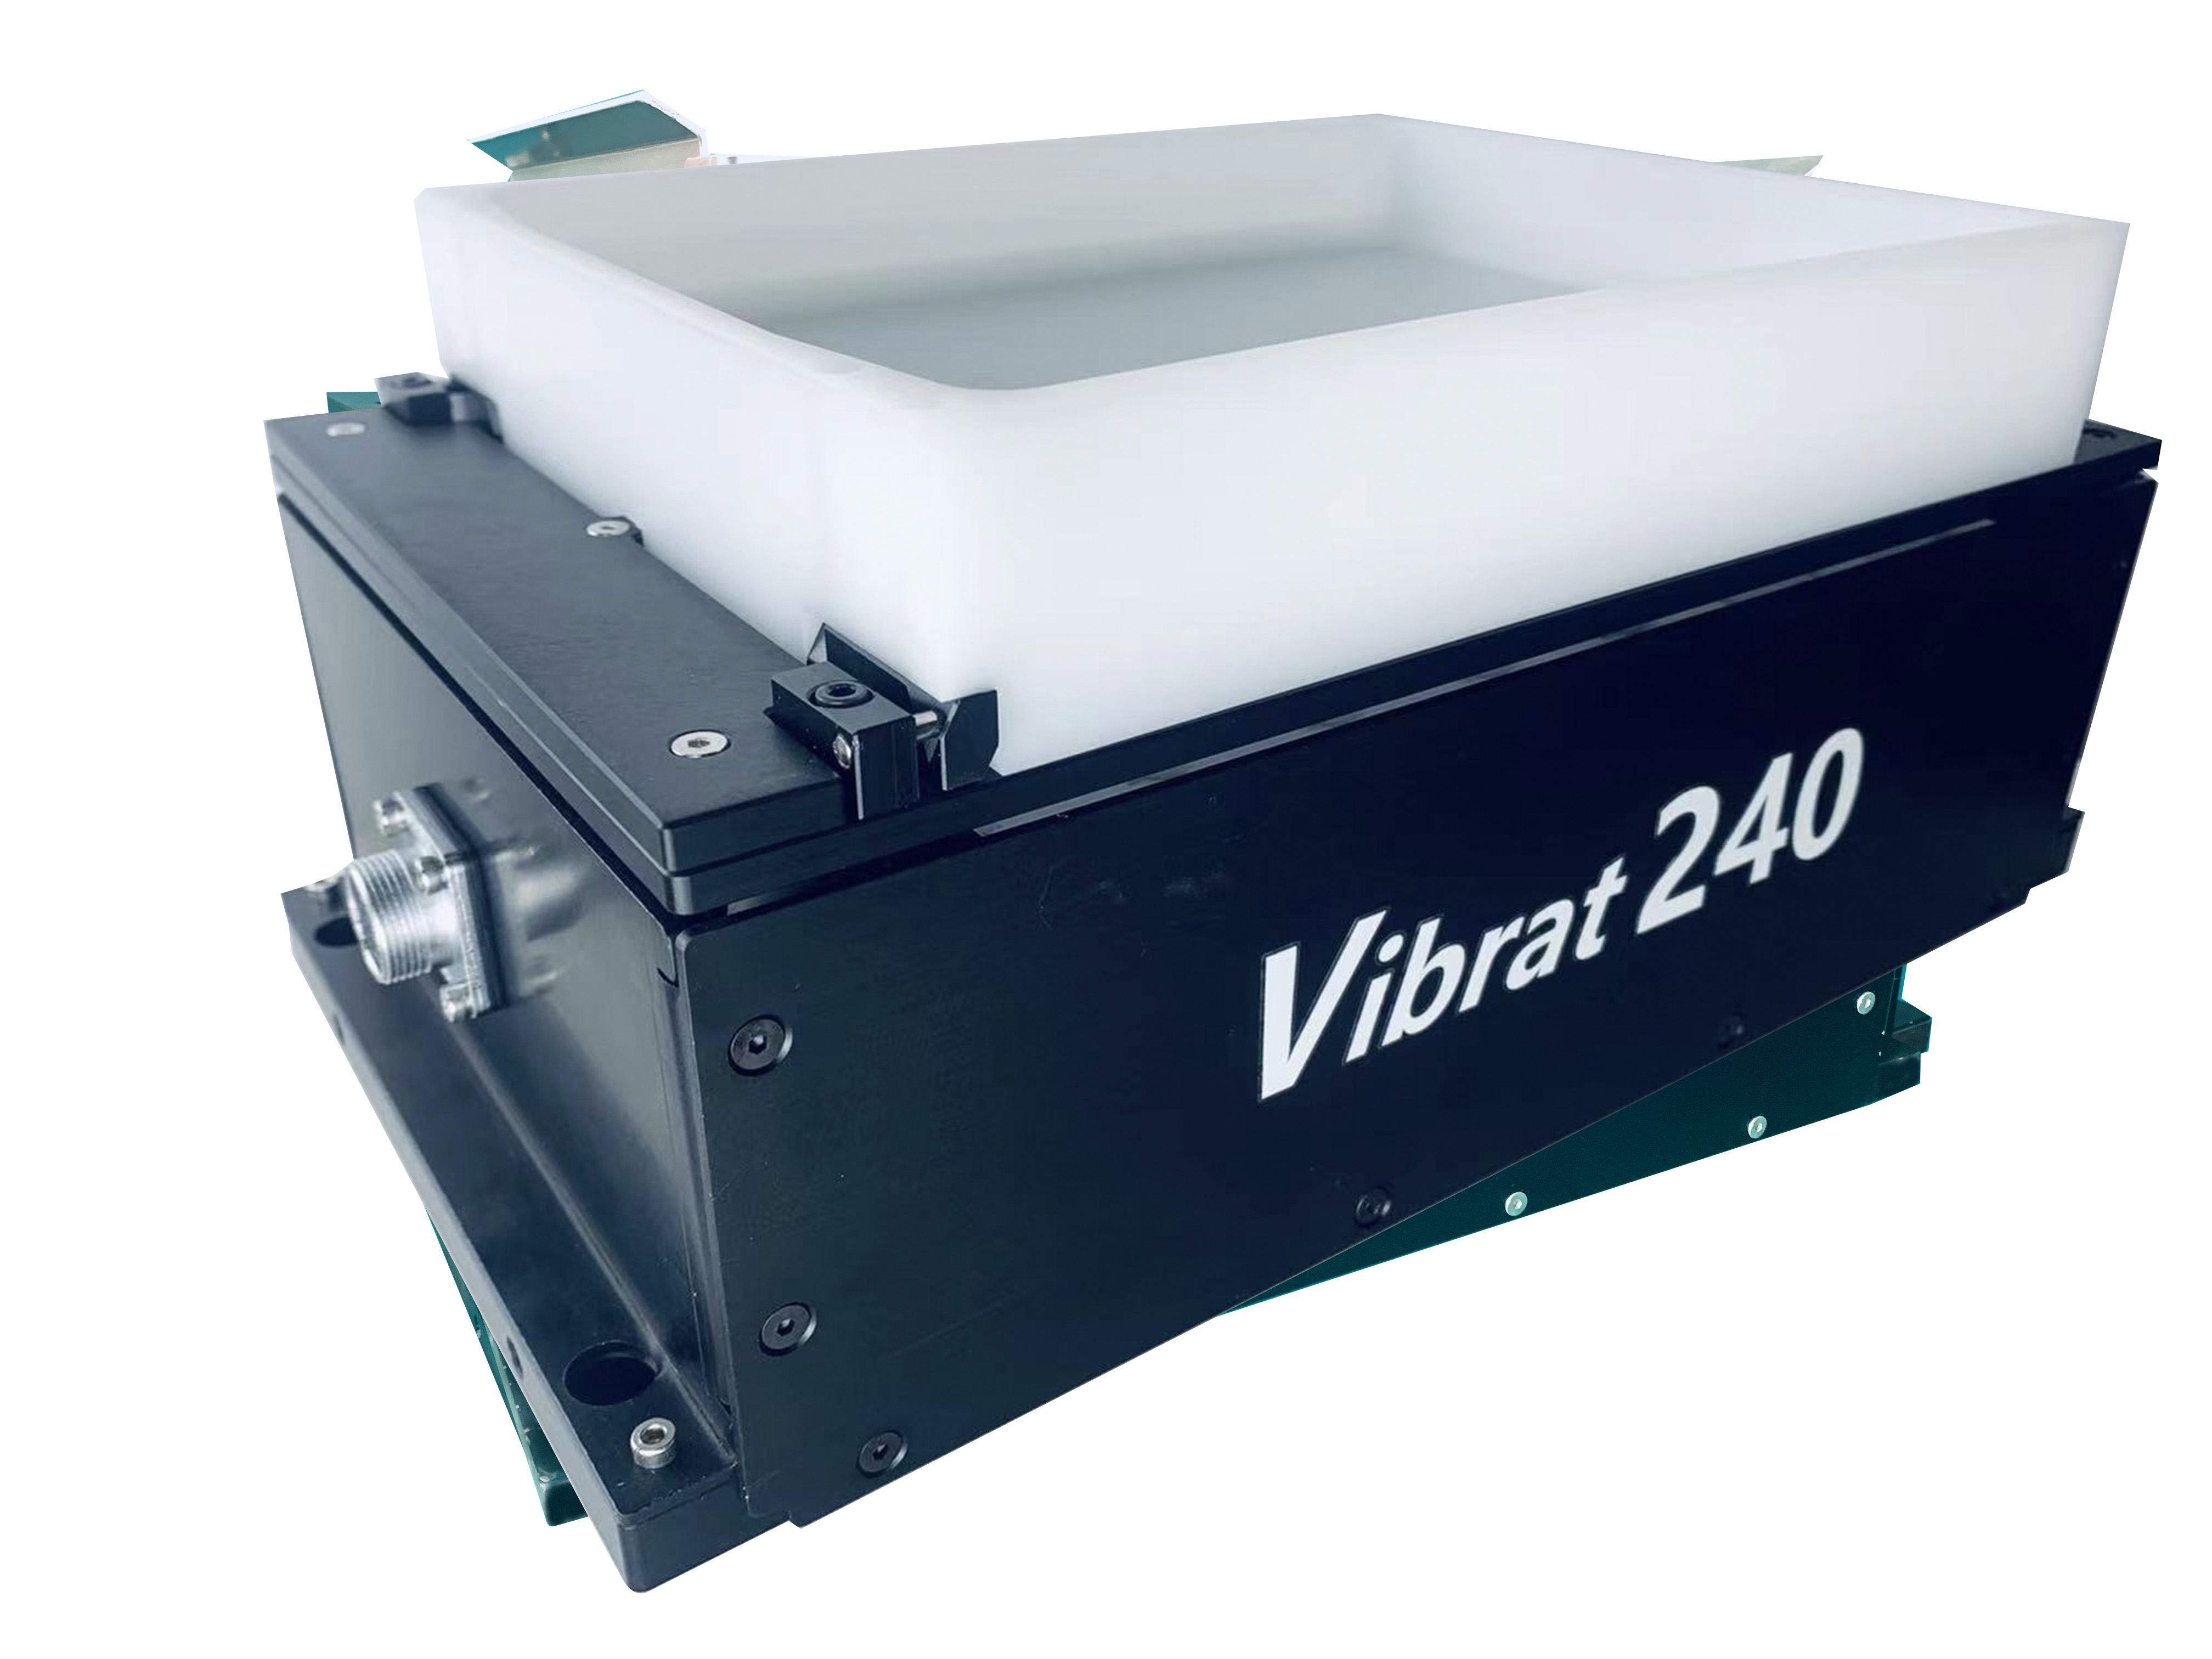 Vibrat-240